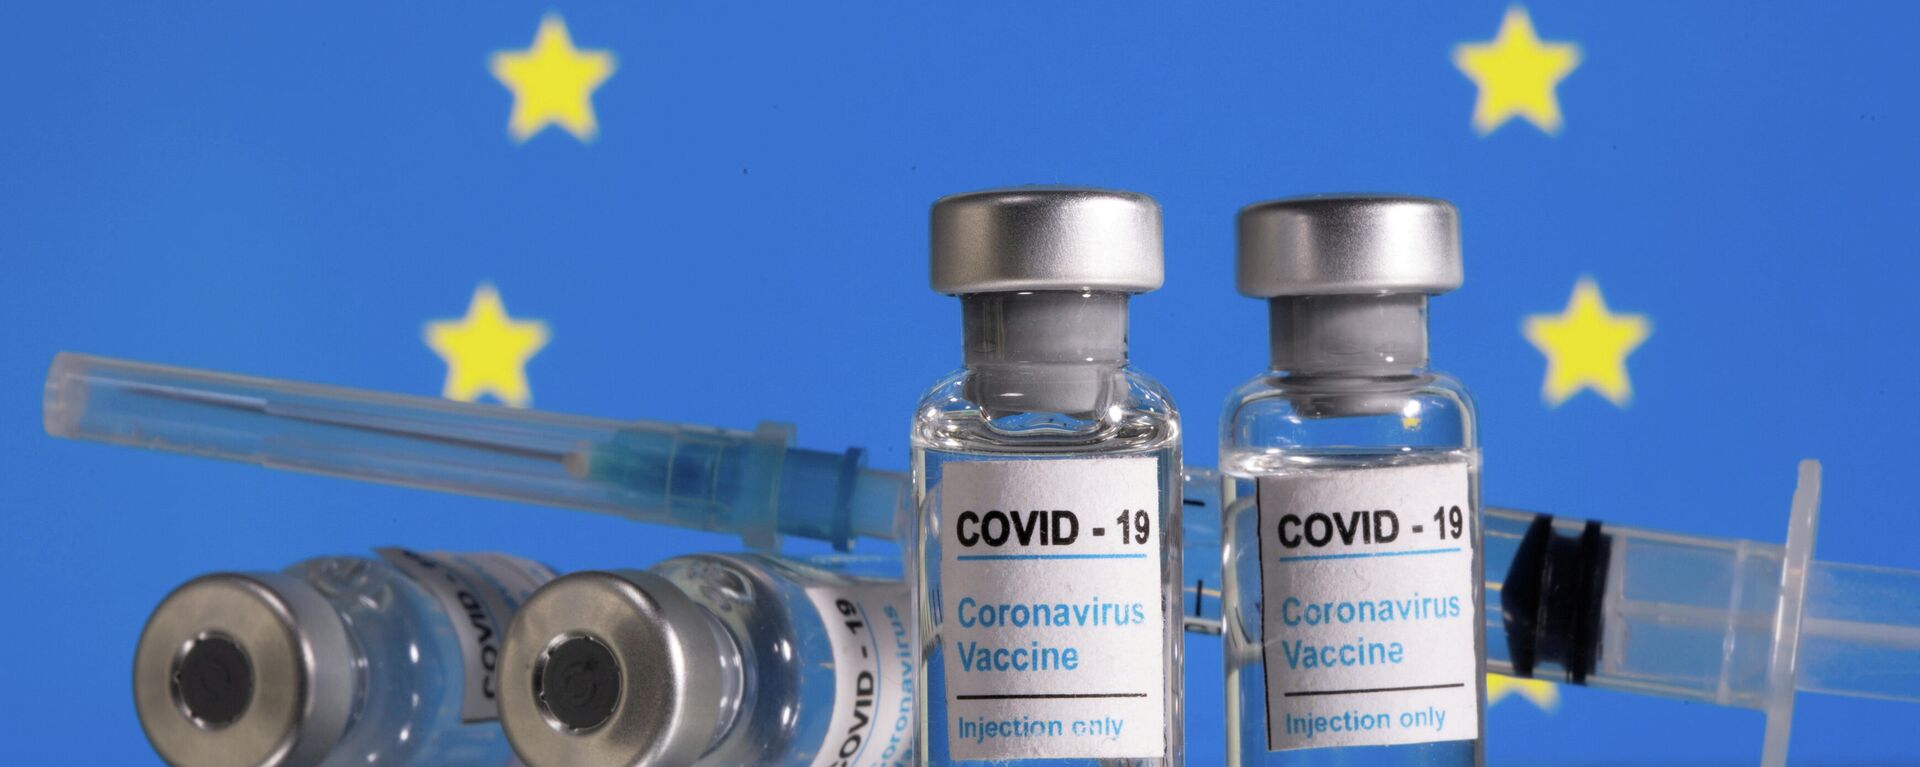 Viales con vacunas contra COVID-19 con la bandera de la UE de fondo - Sputnik Mundo, 1920, 28.03.2021